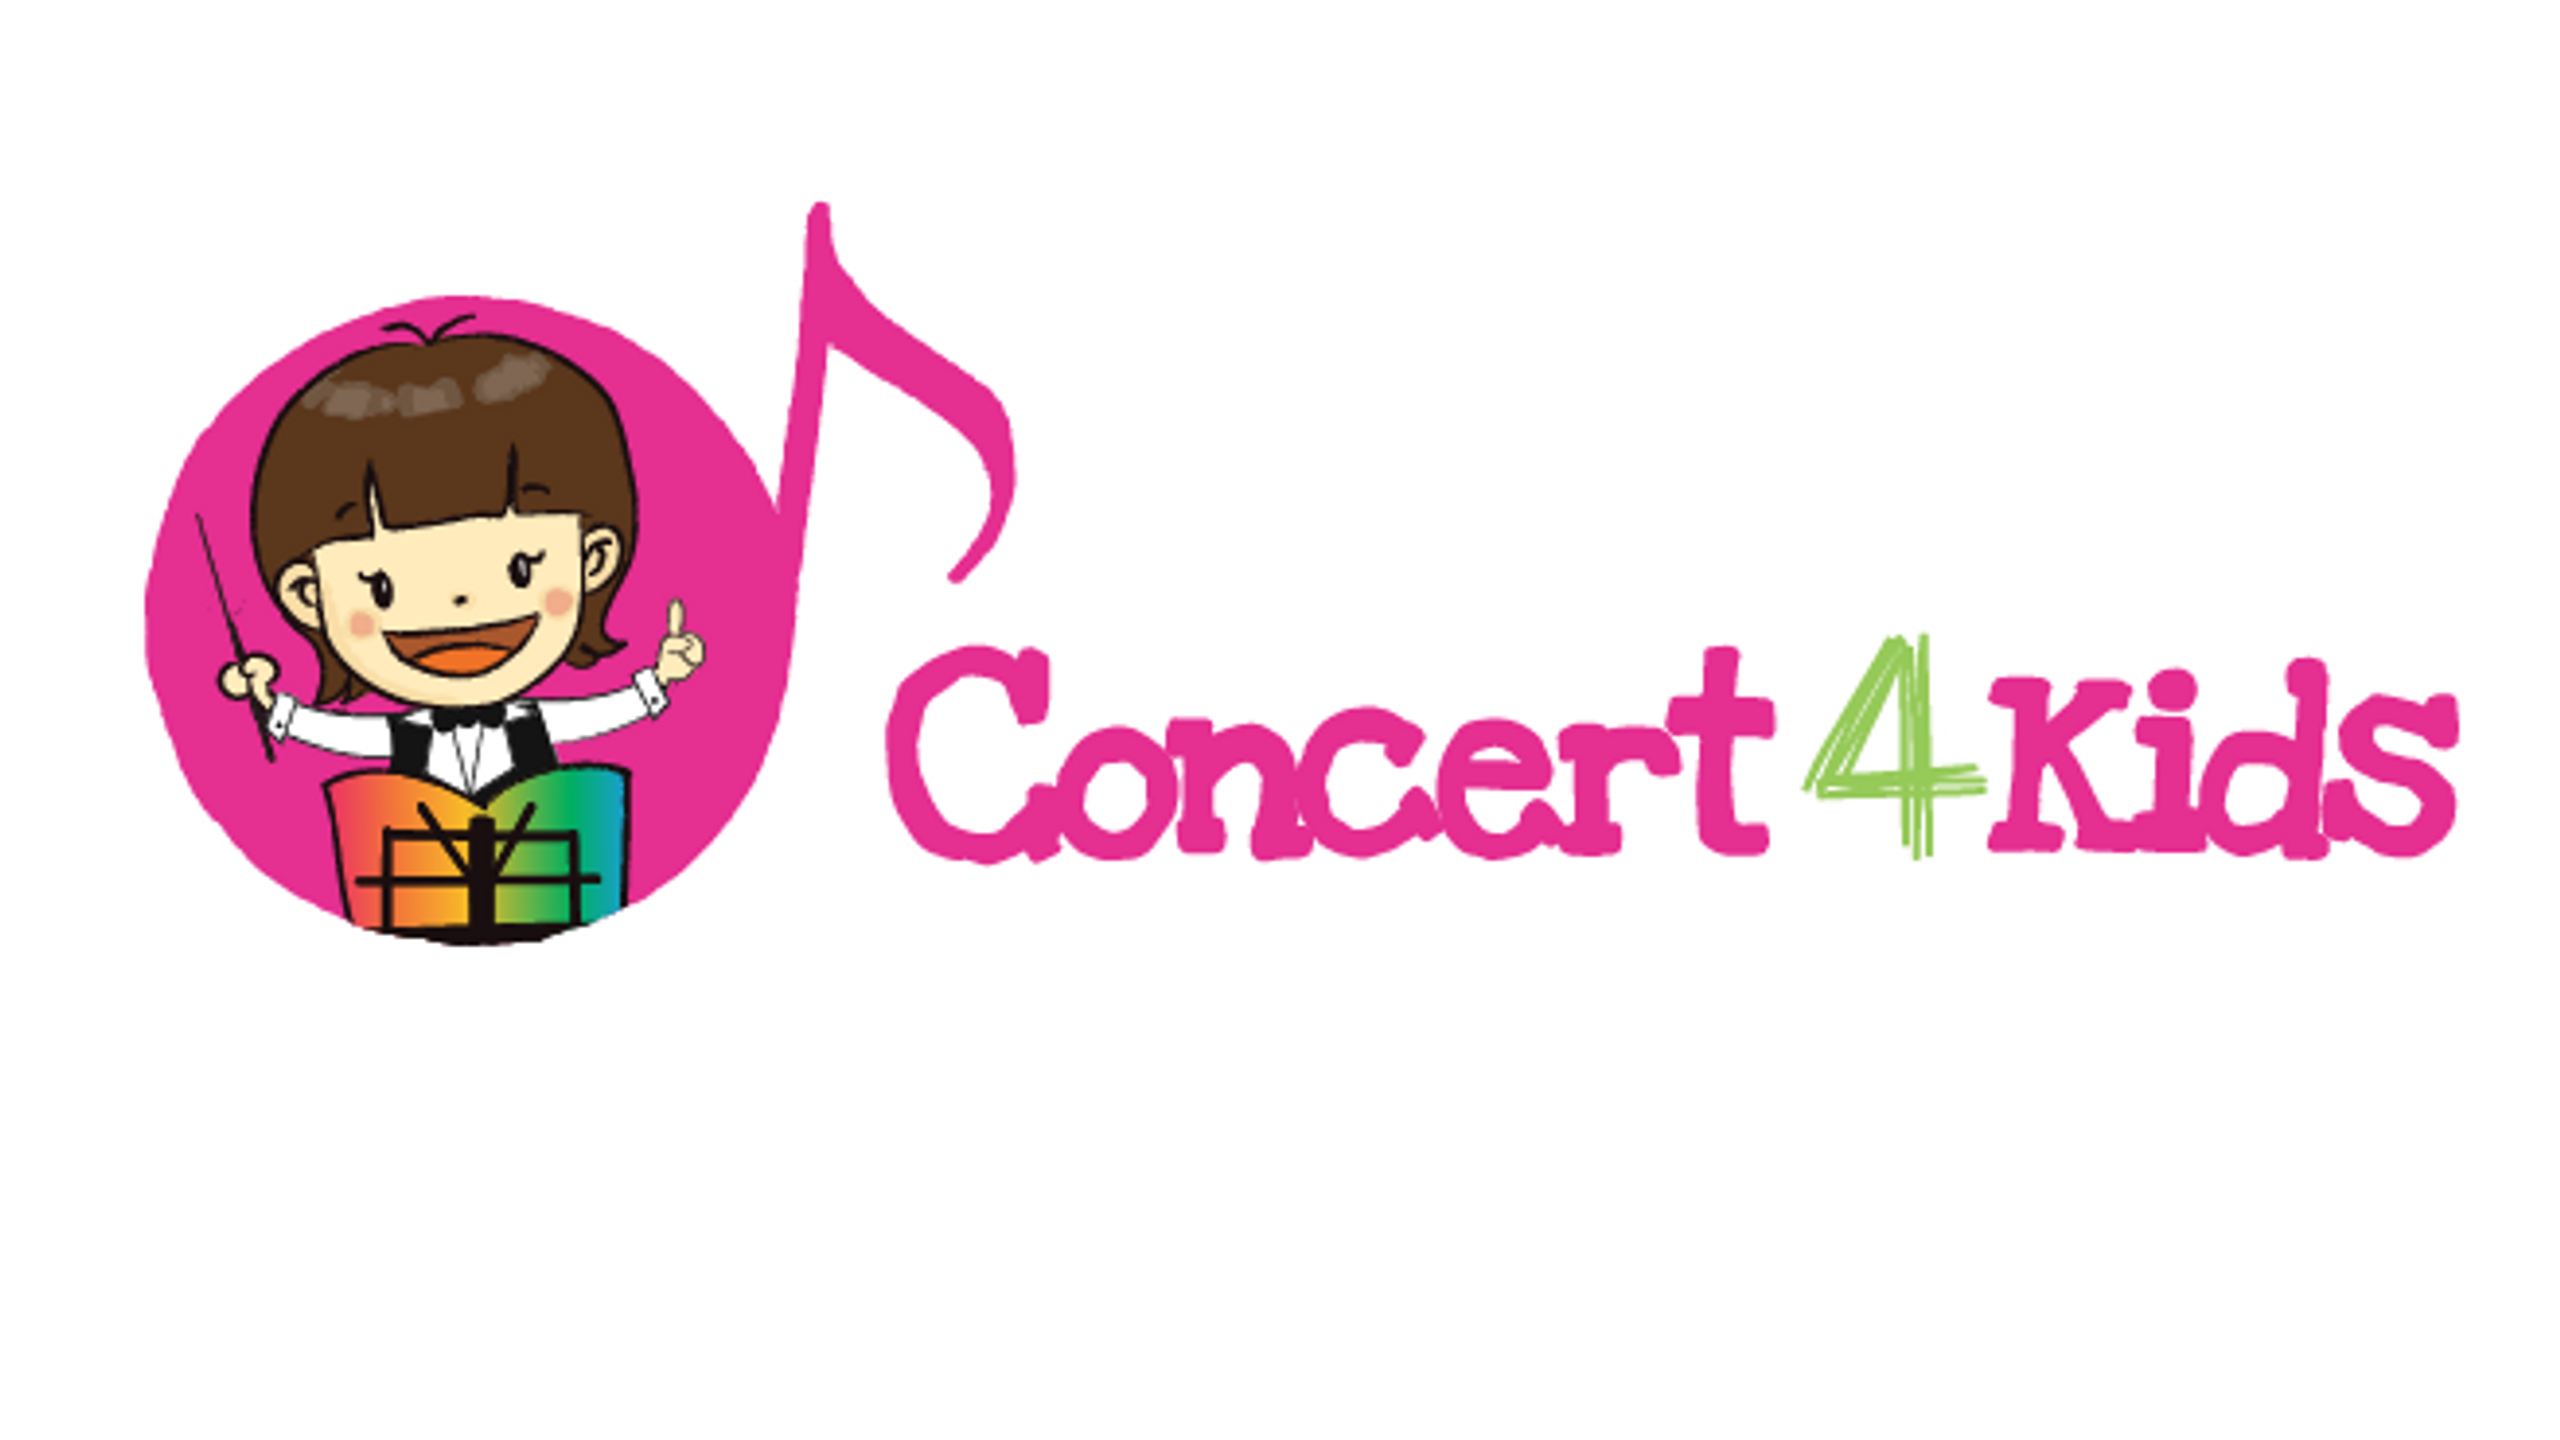 Concert 4 Kids